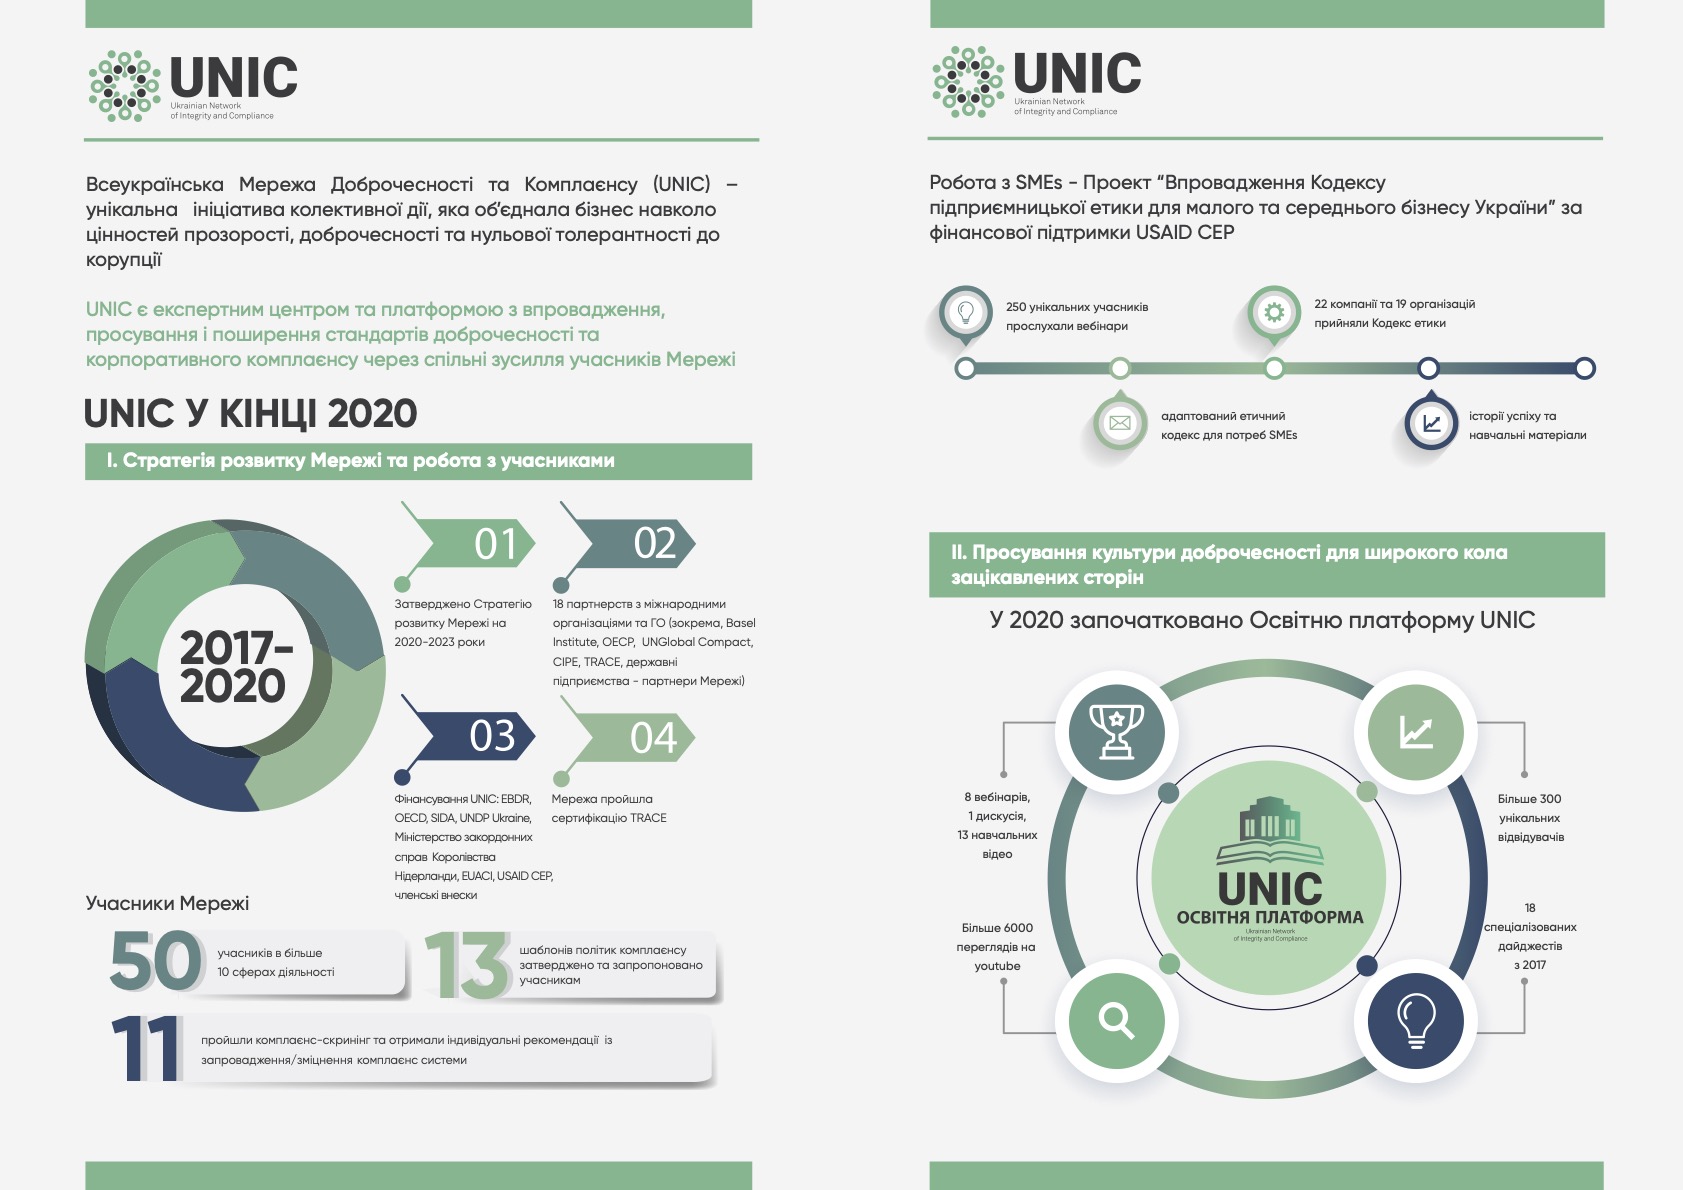 Інституційні партнери EUACI: Всеукраїнська мережа доброчесності та комплаєнсу (UNIC)